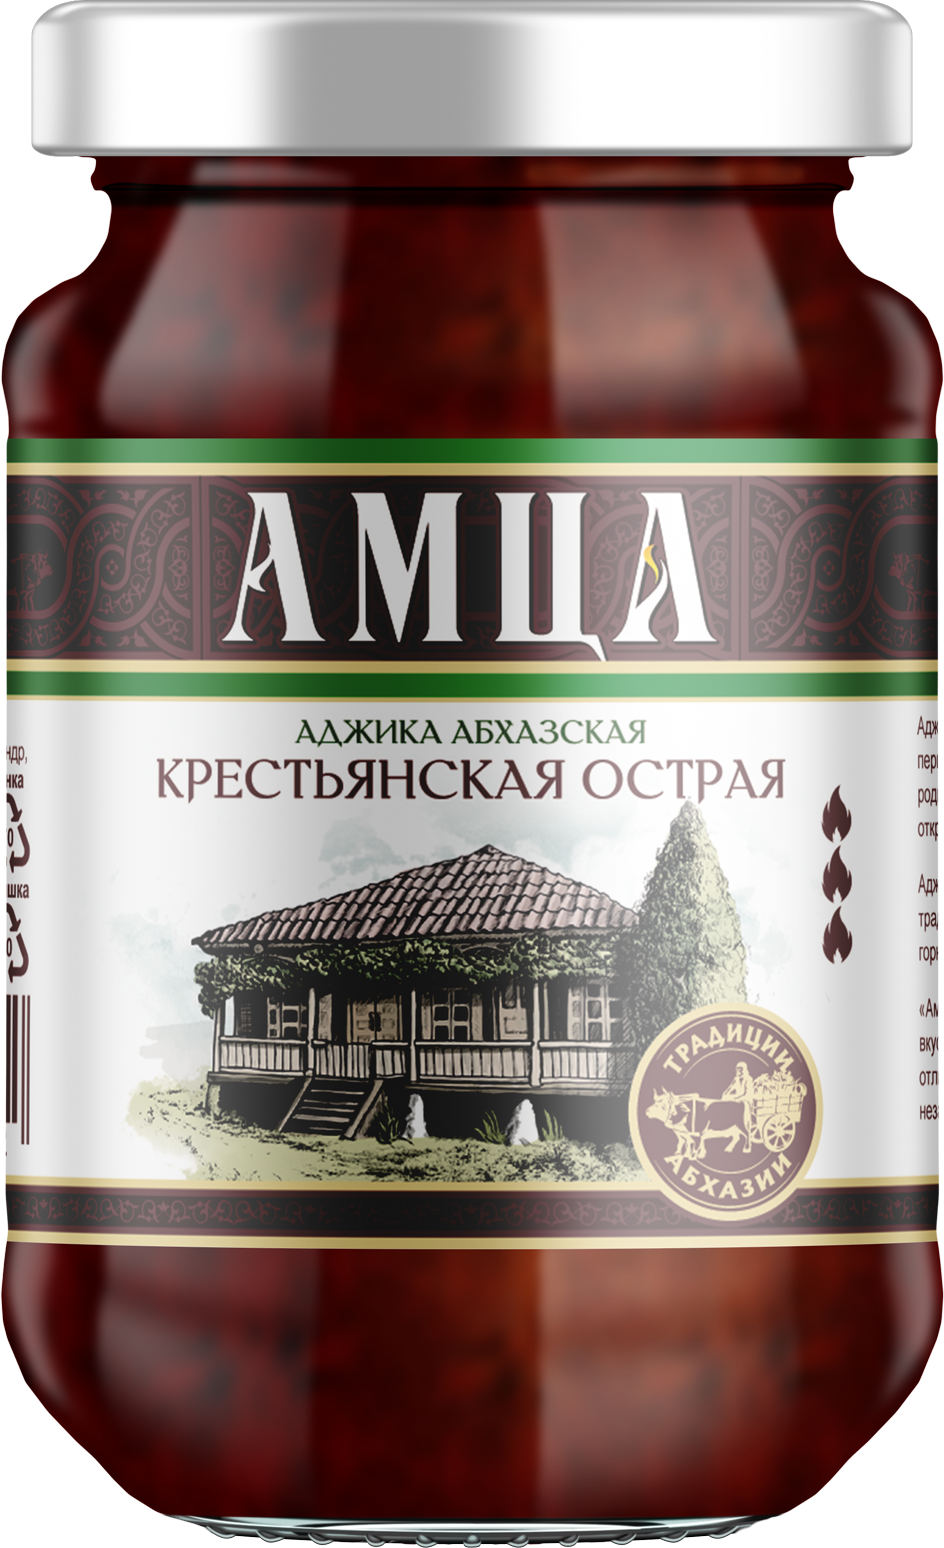 Аджика АМЦА абхазская крестьянская острая, 200г